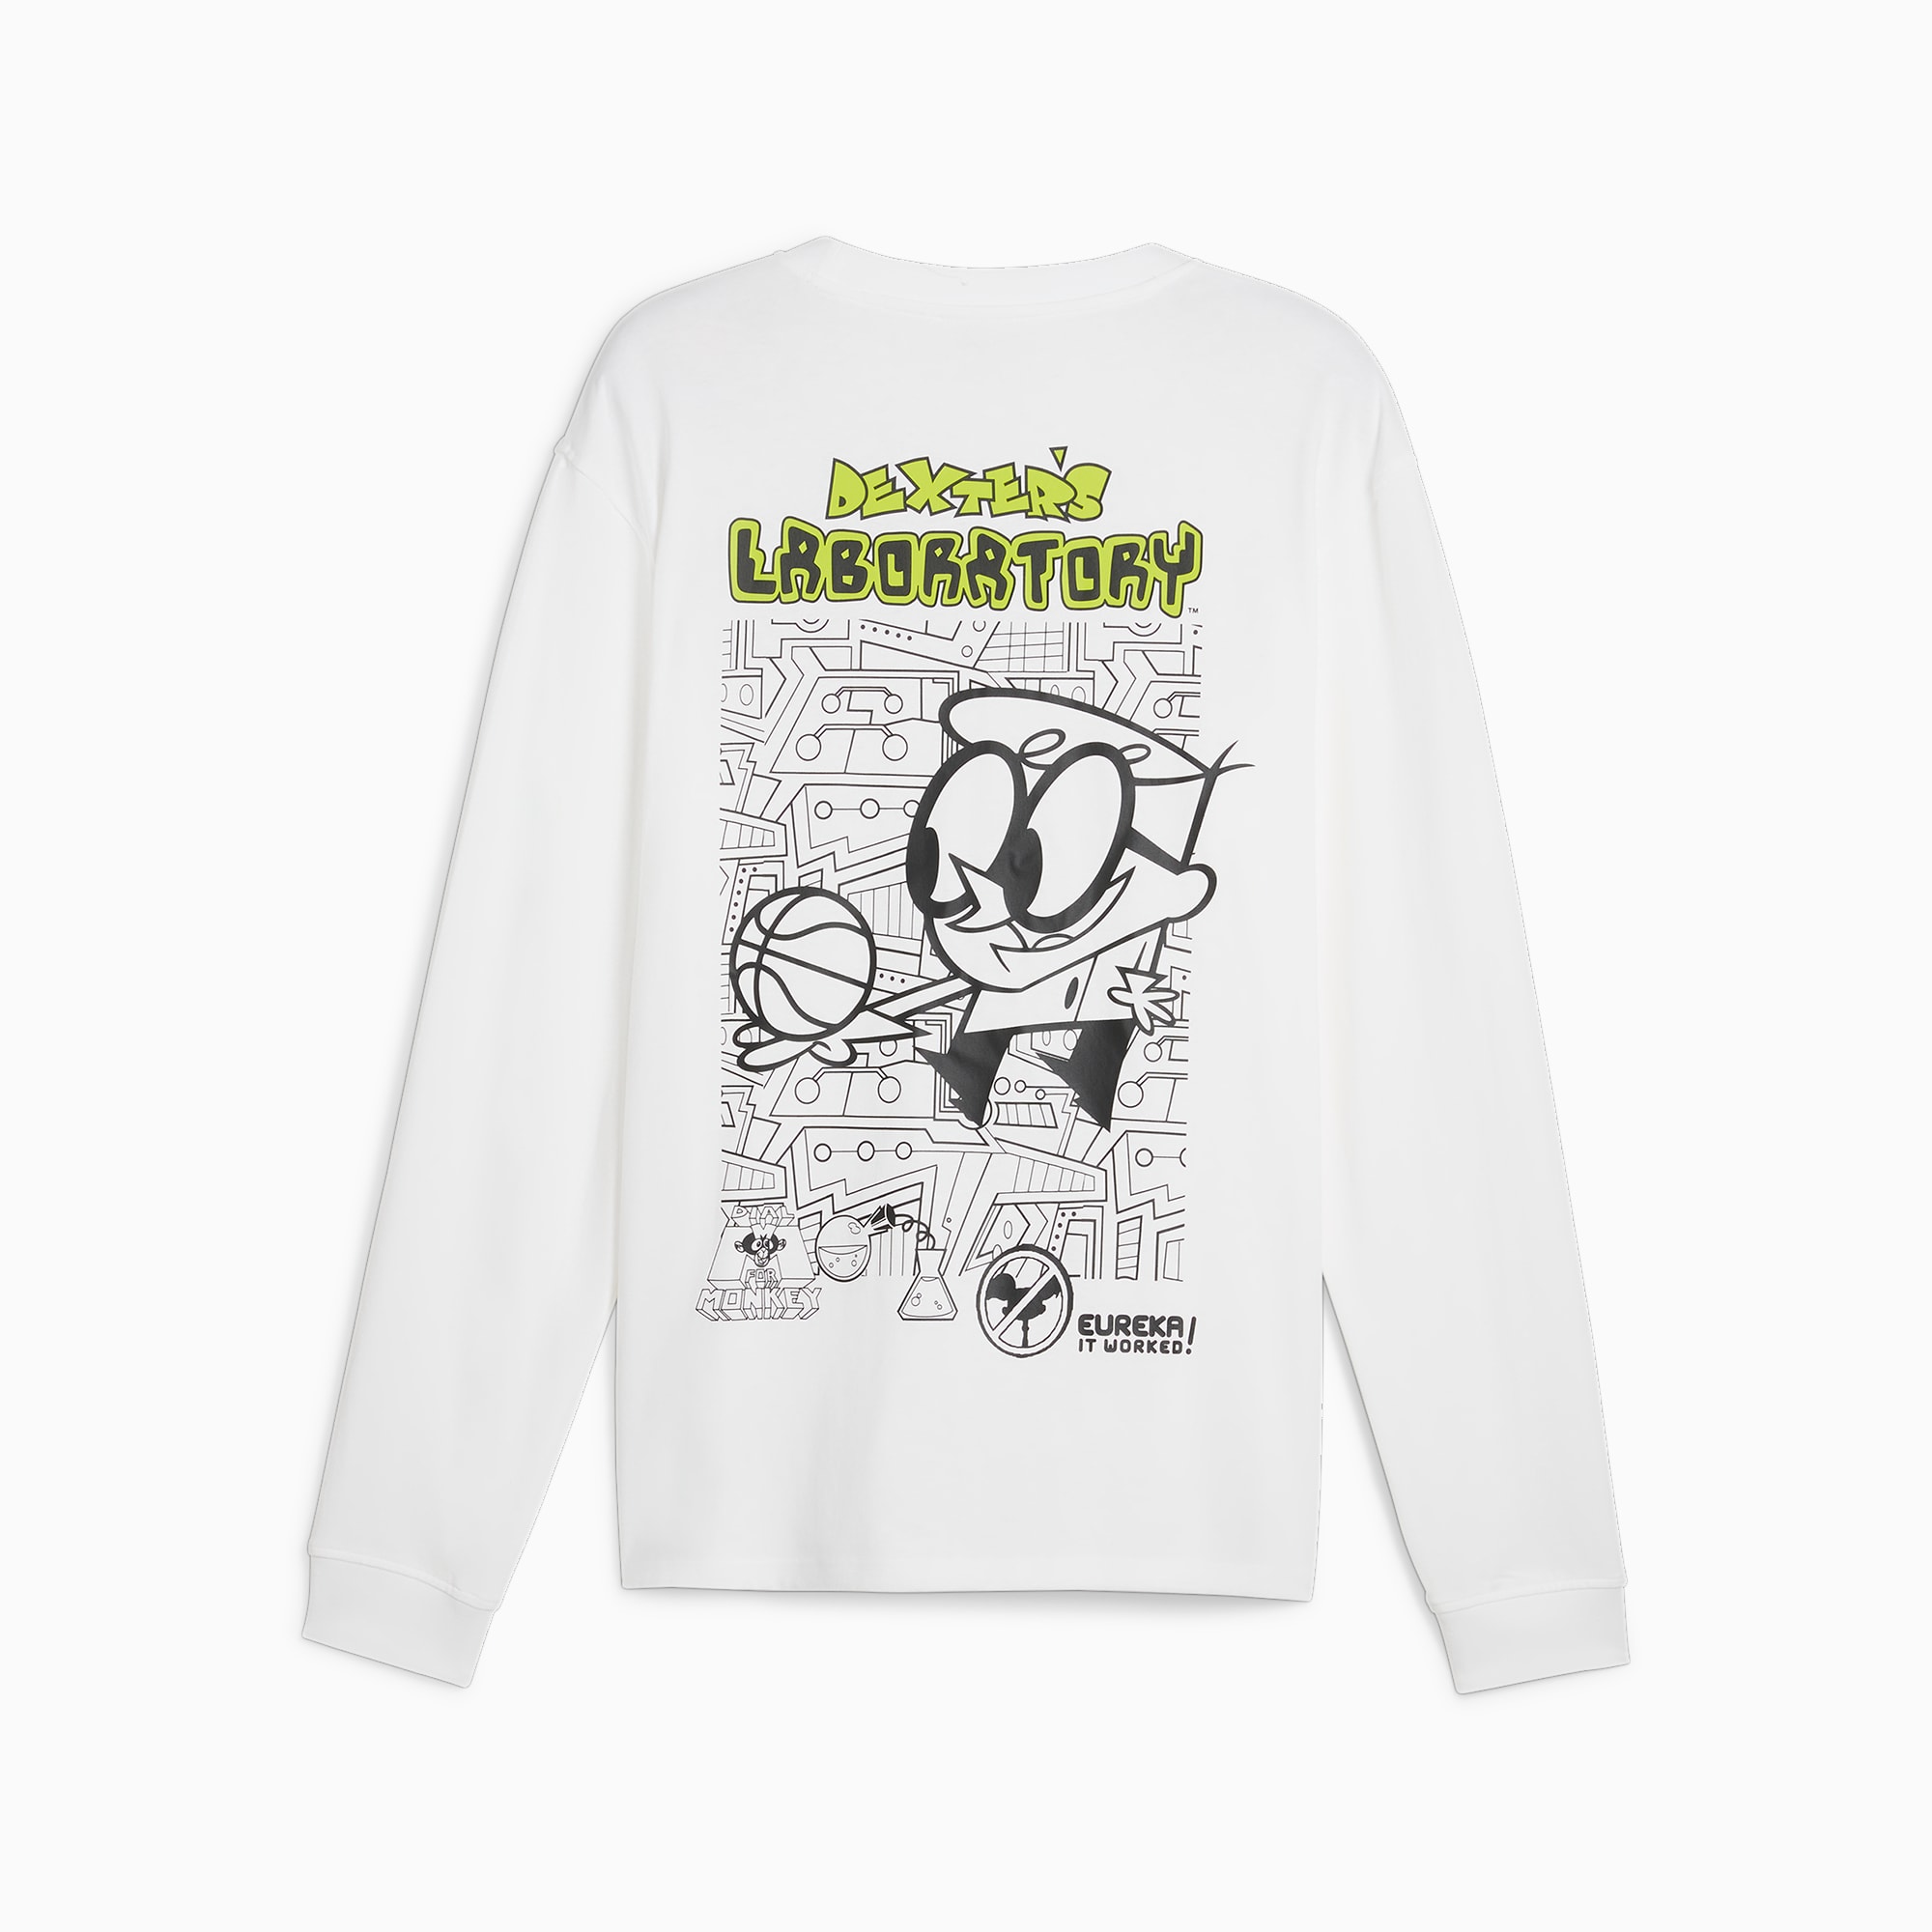 Buy LAB CLOTHING CO SS Unisex Oversized T-Shirt